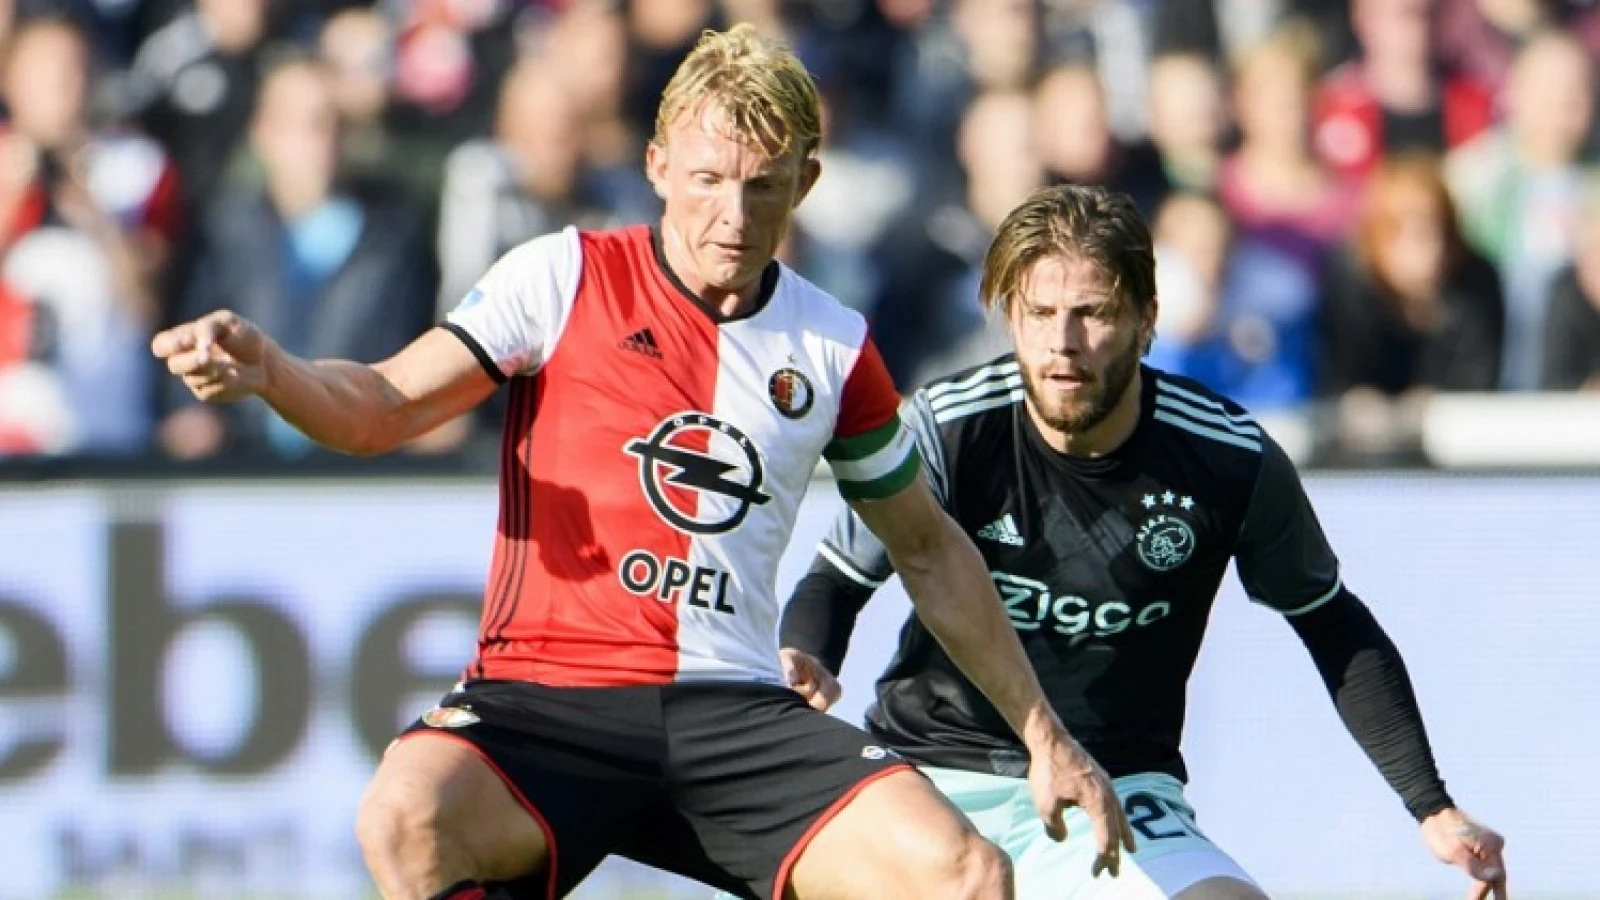 Schöne voorspelt probleem Feyenoord: 'Ik denk dat het ze gaat opbreken'